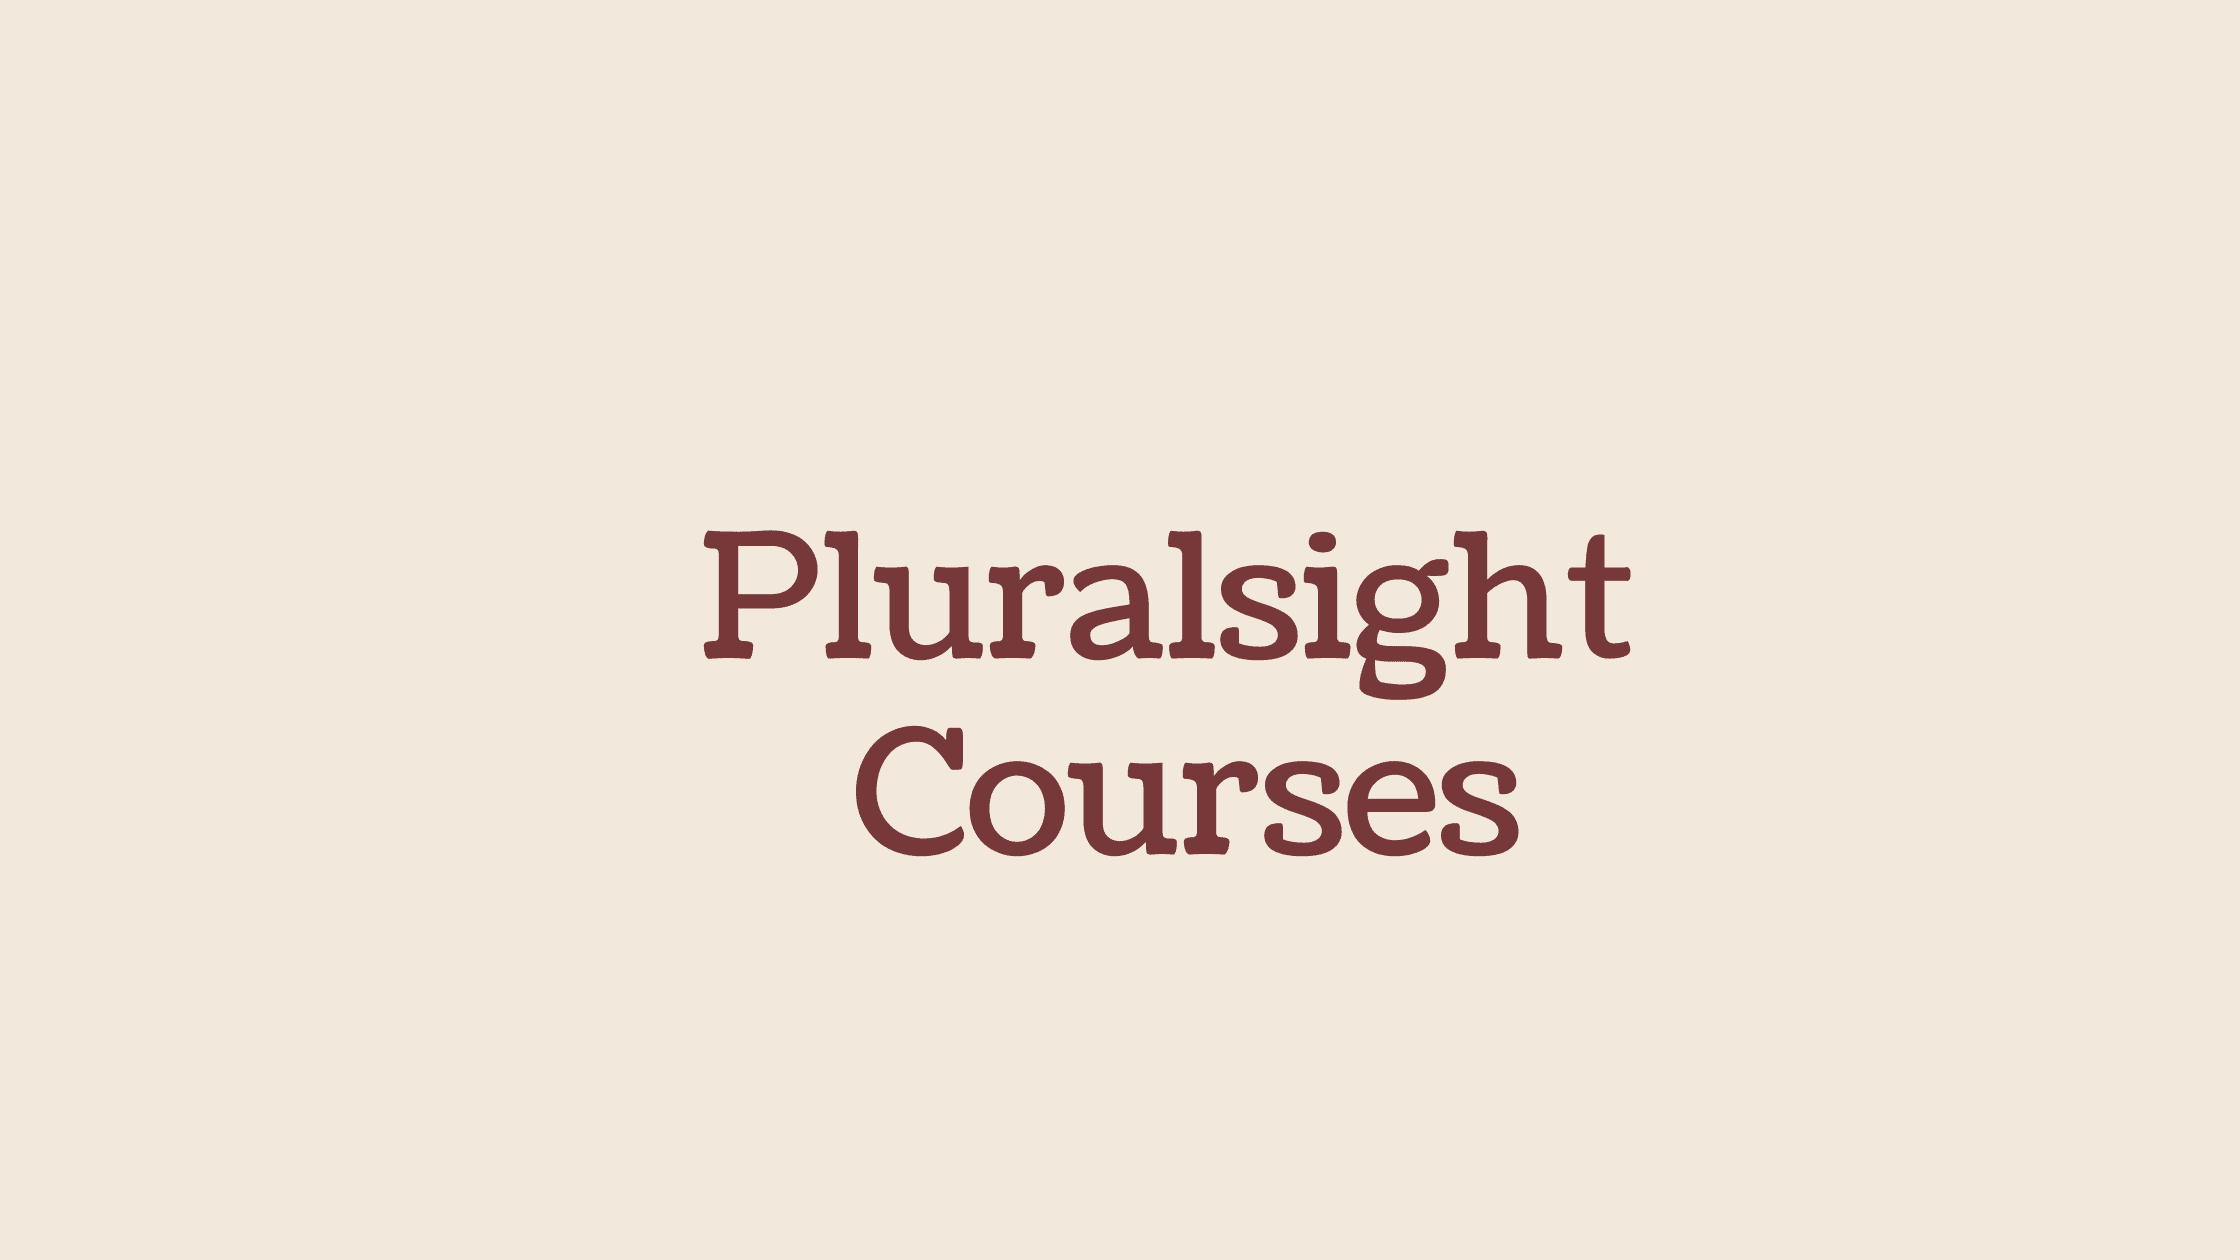 Pluralsight courses